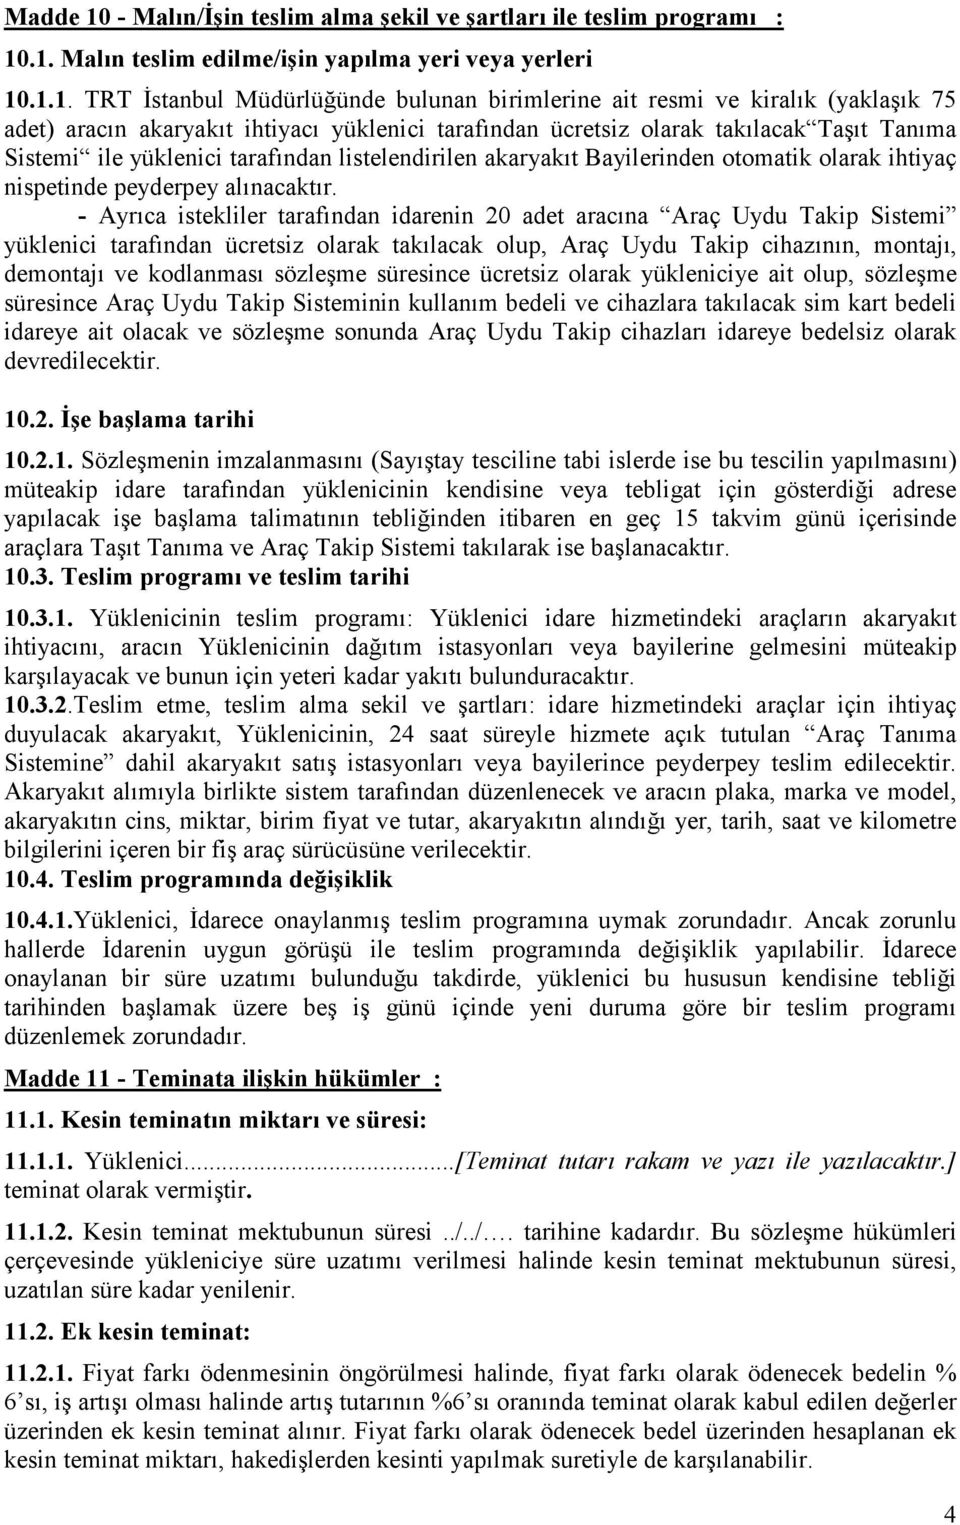 .1. Malın teslim edilme/işin yapılma yeri veya yerleri 10.1.1. TRT Đstanbul Müdürlüğünde bulunan birimlerine ait resmi ve kiralık (yaklaşık 75 adet) aracın akaryakıt ihtiyacı yüklenici tarafından